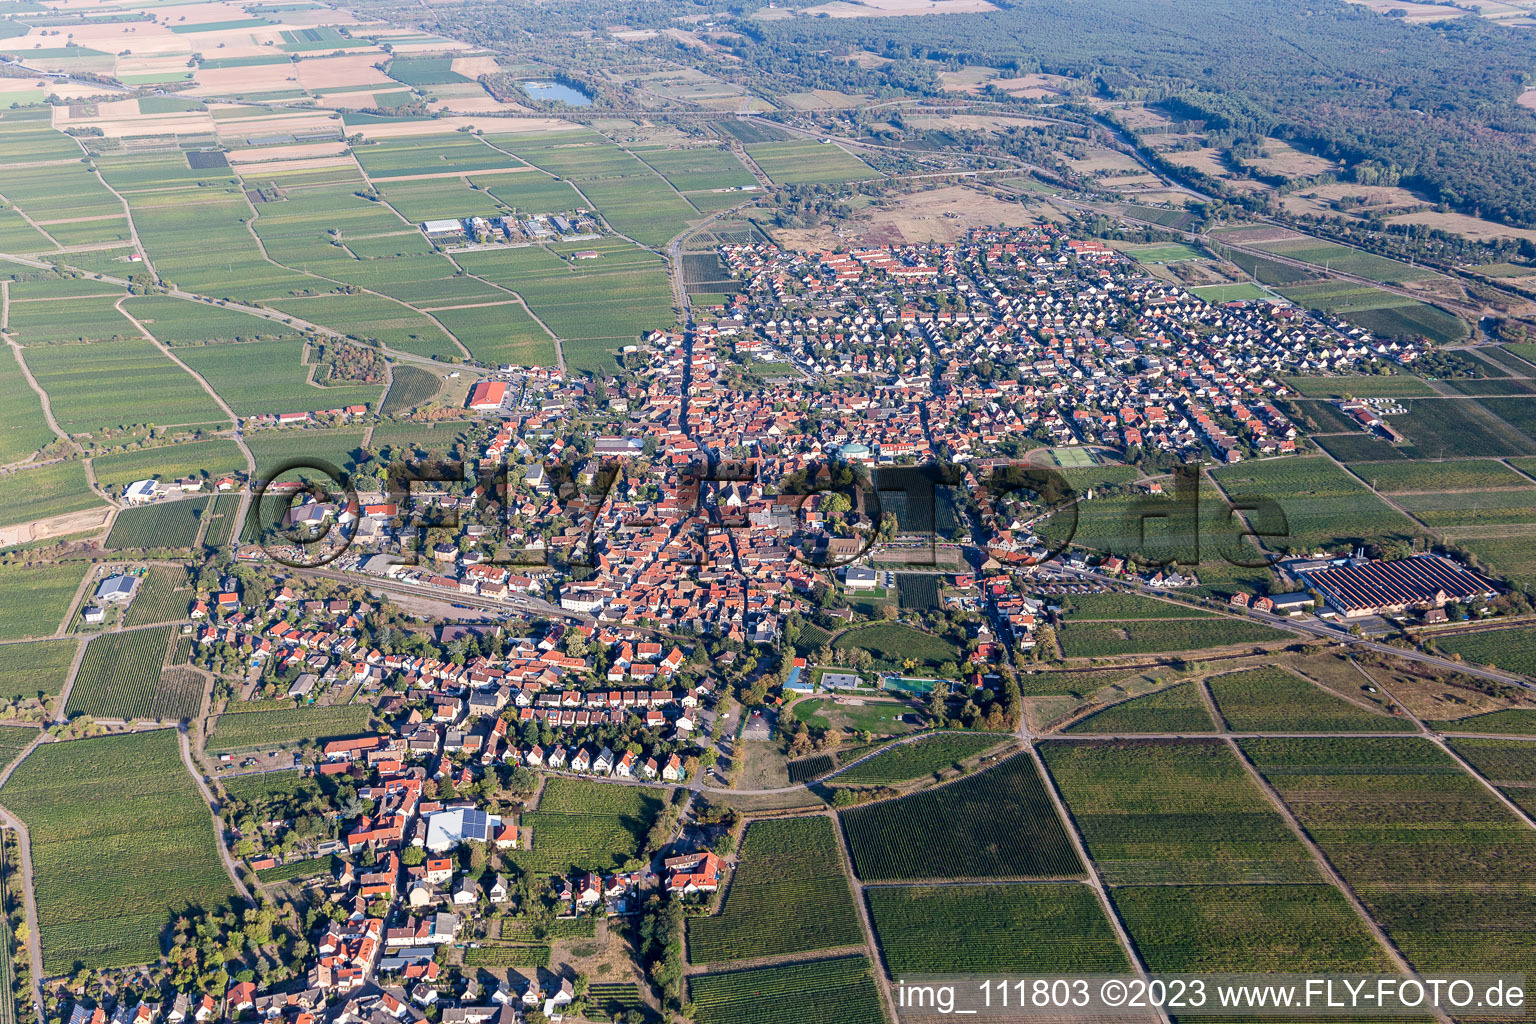 Luftbild von Mussbach im Ortsteil Mußbach in Neustadt an der Weinstraße im Bundesland Rheinland-Pfalz, Deutschland